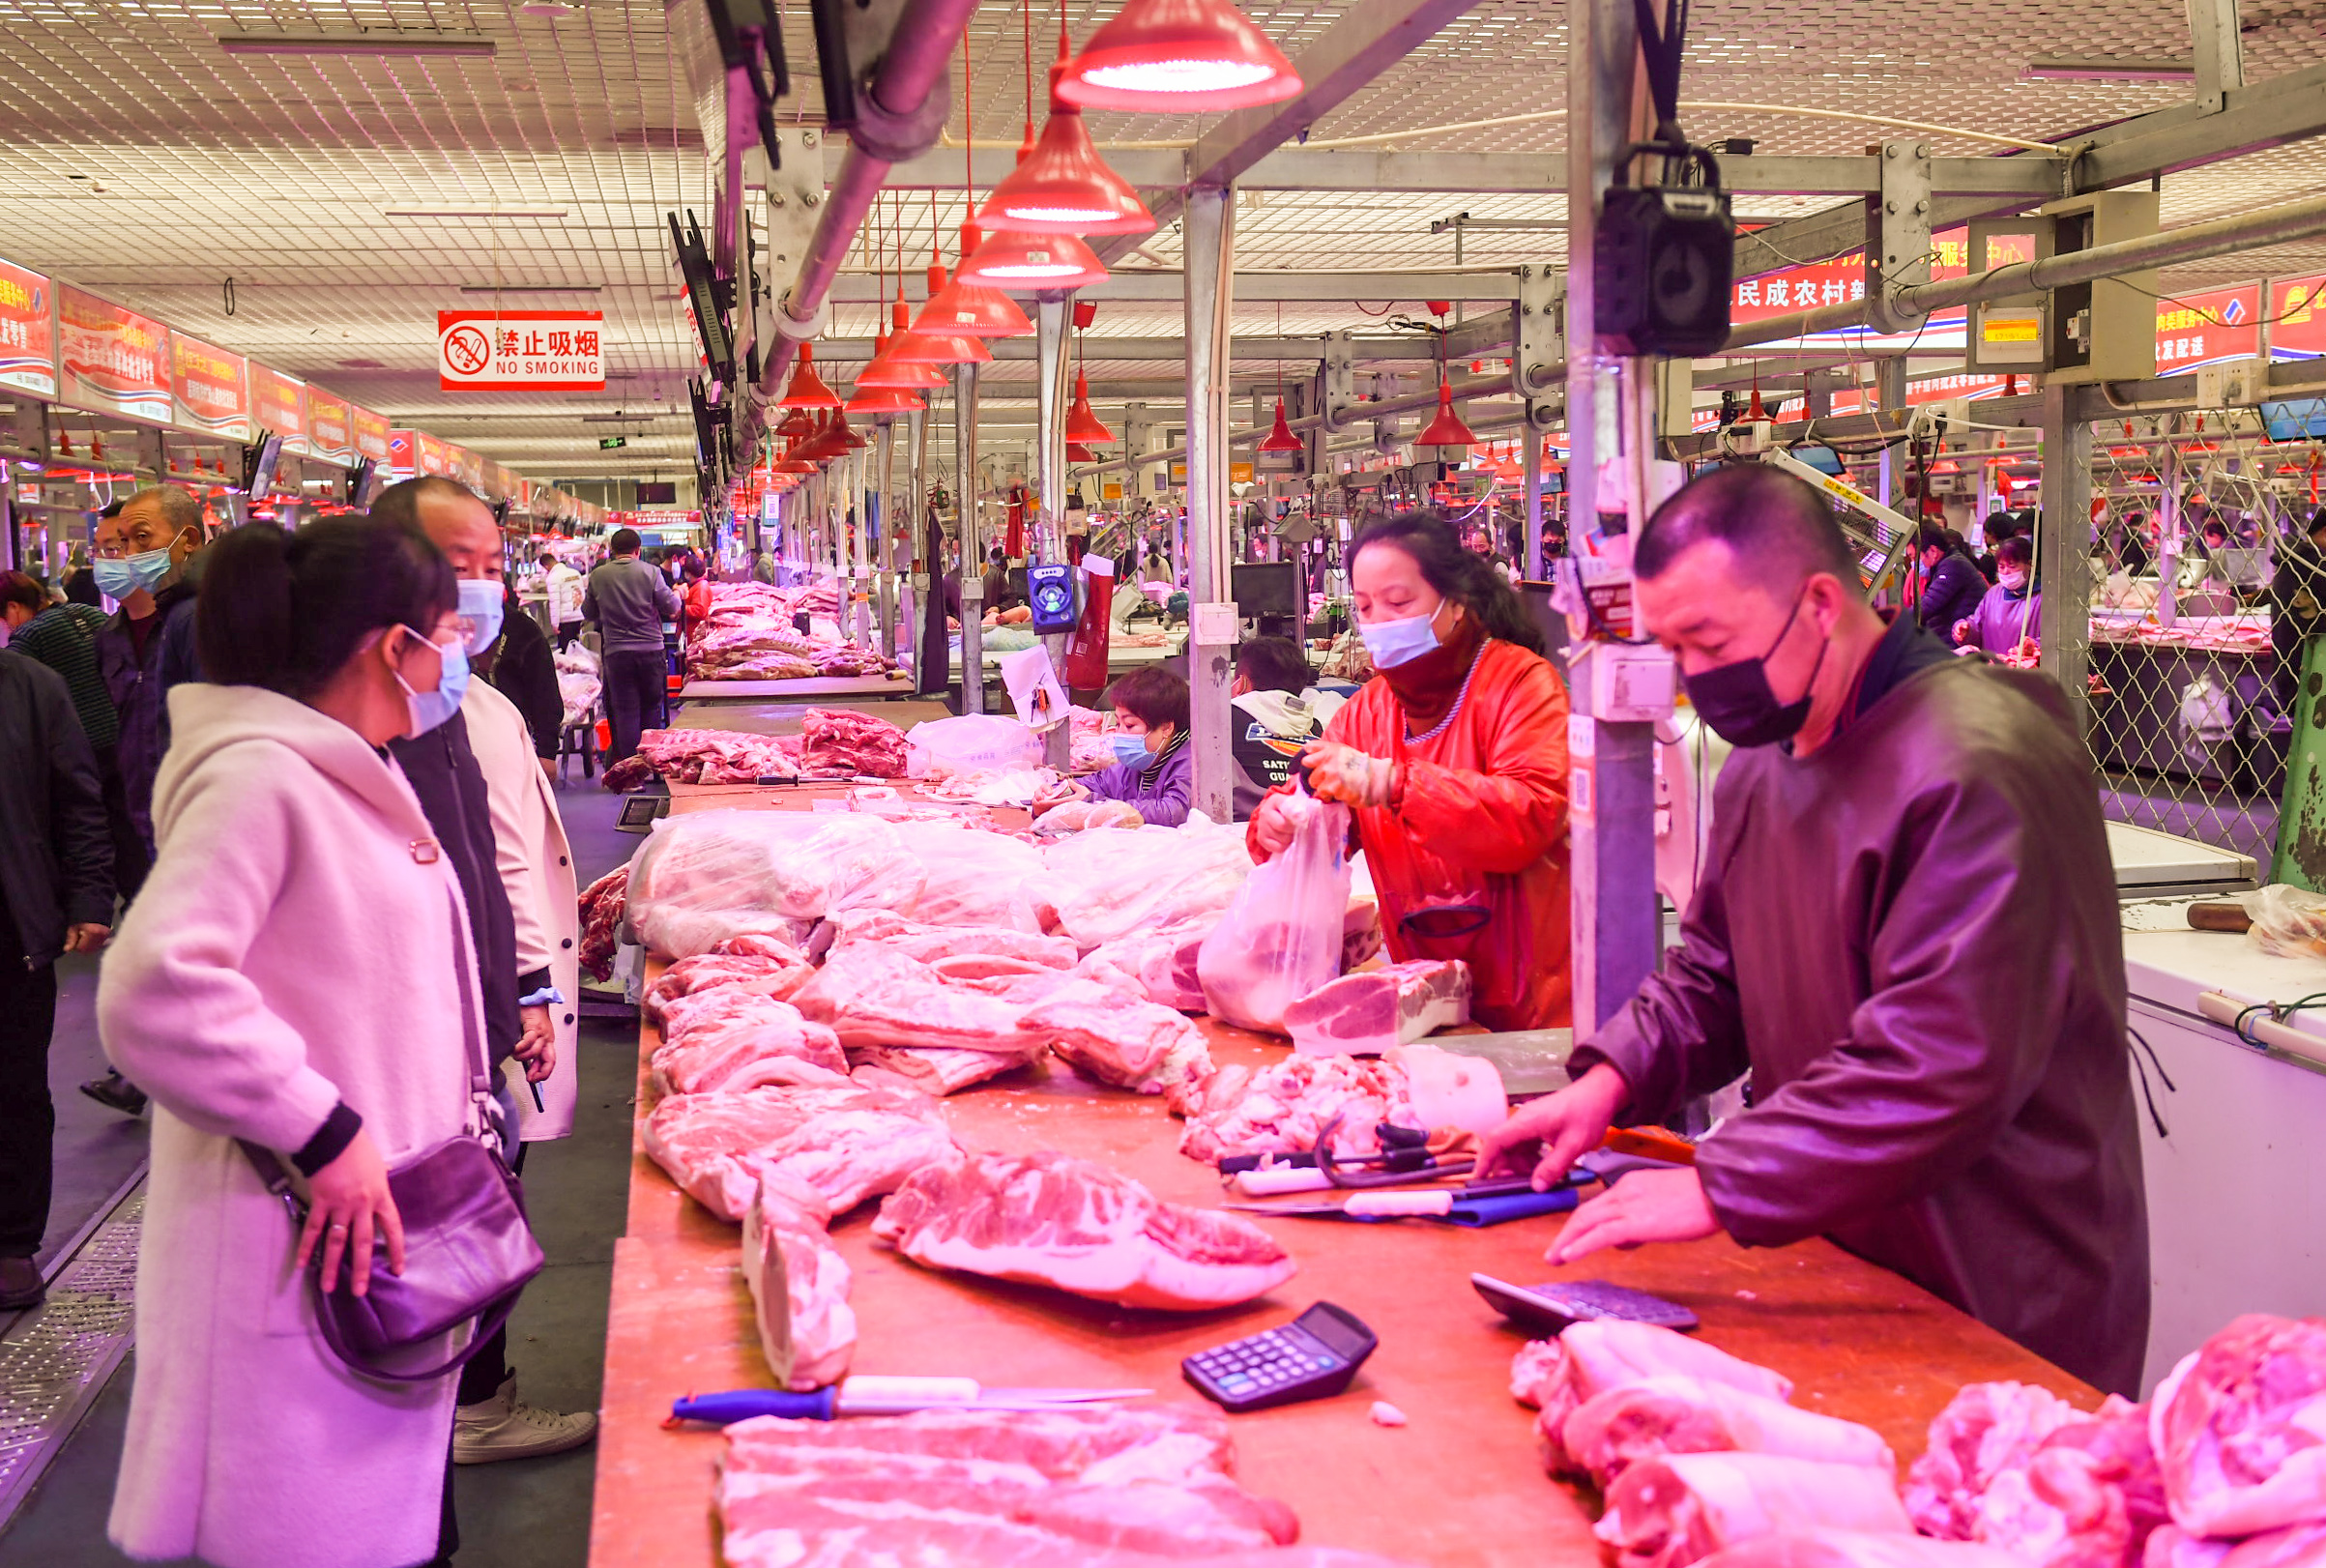 10月24日,在内蒙古呼和浩特市万惠农贸批发市场,市民在采购猪肉